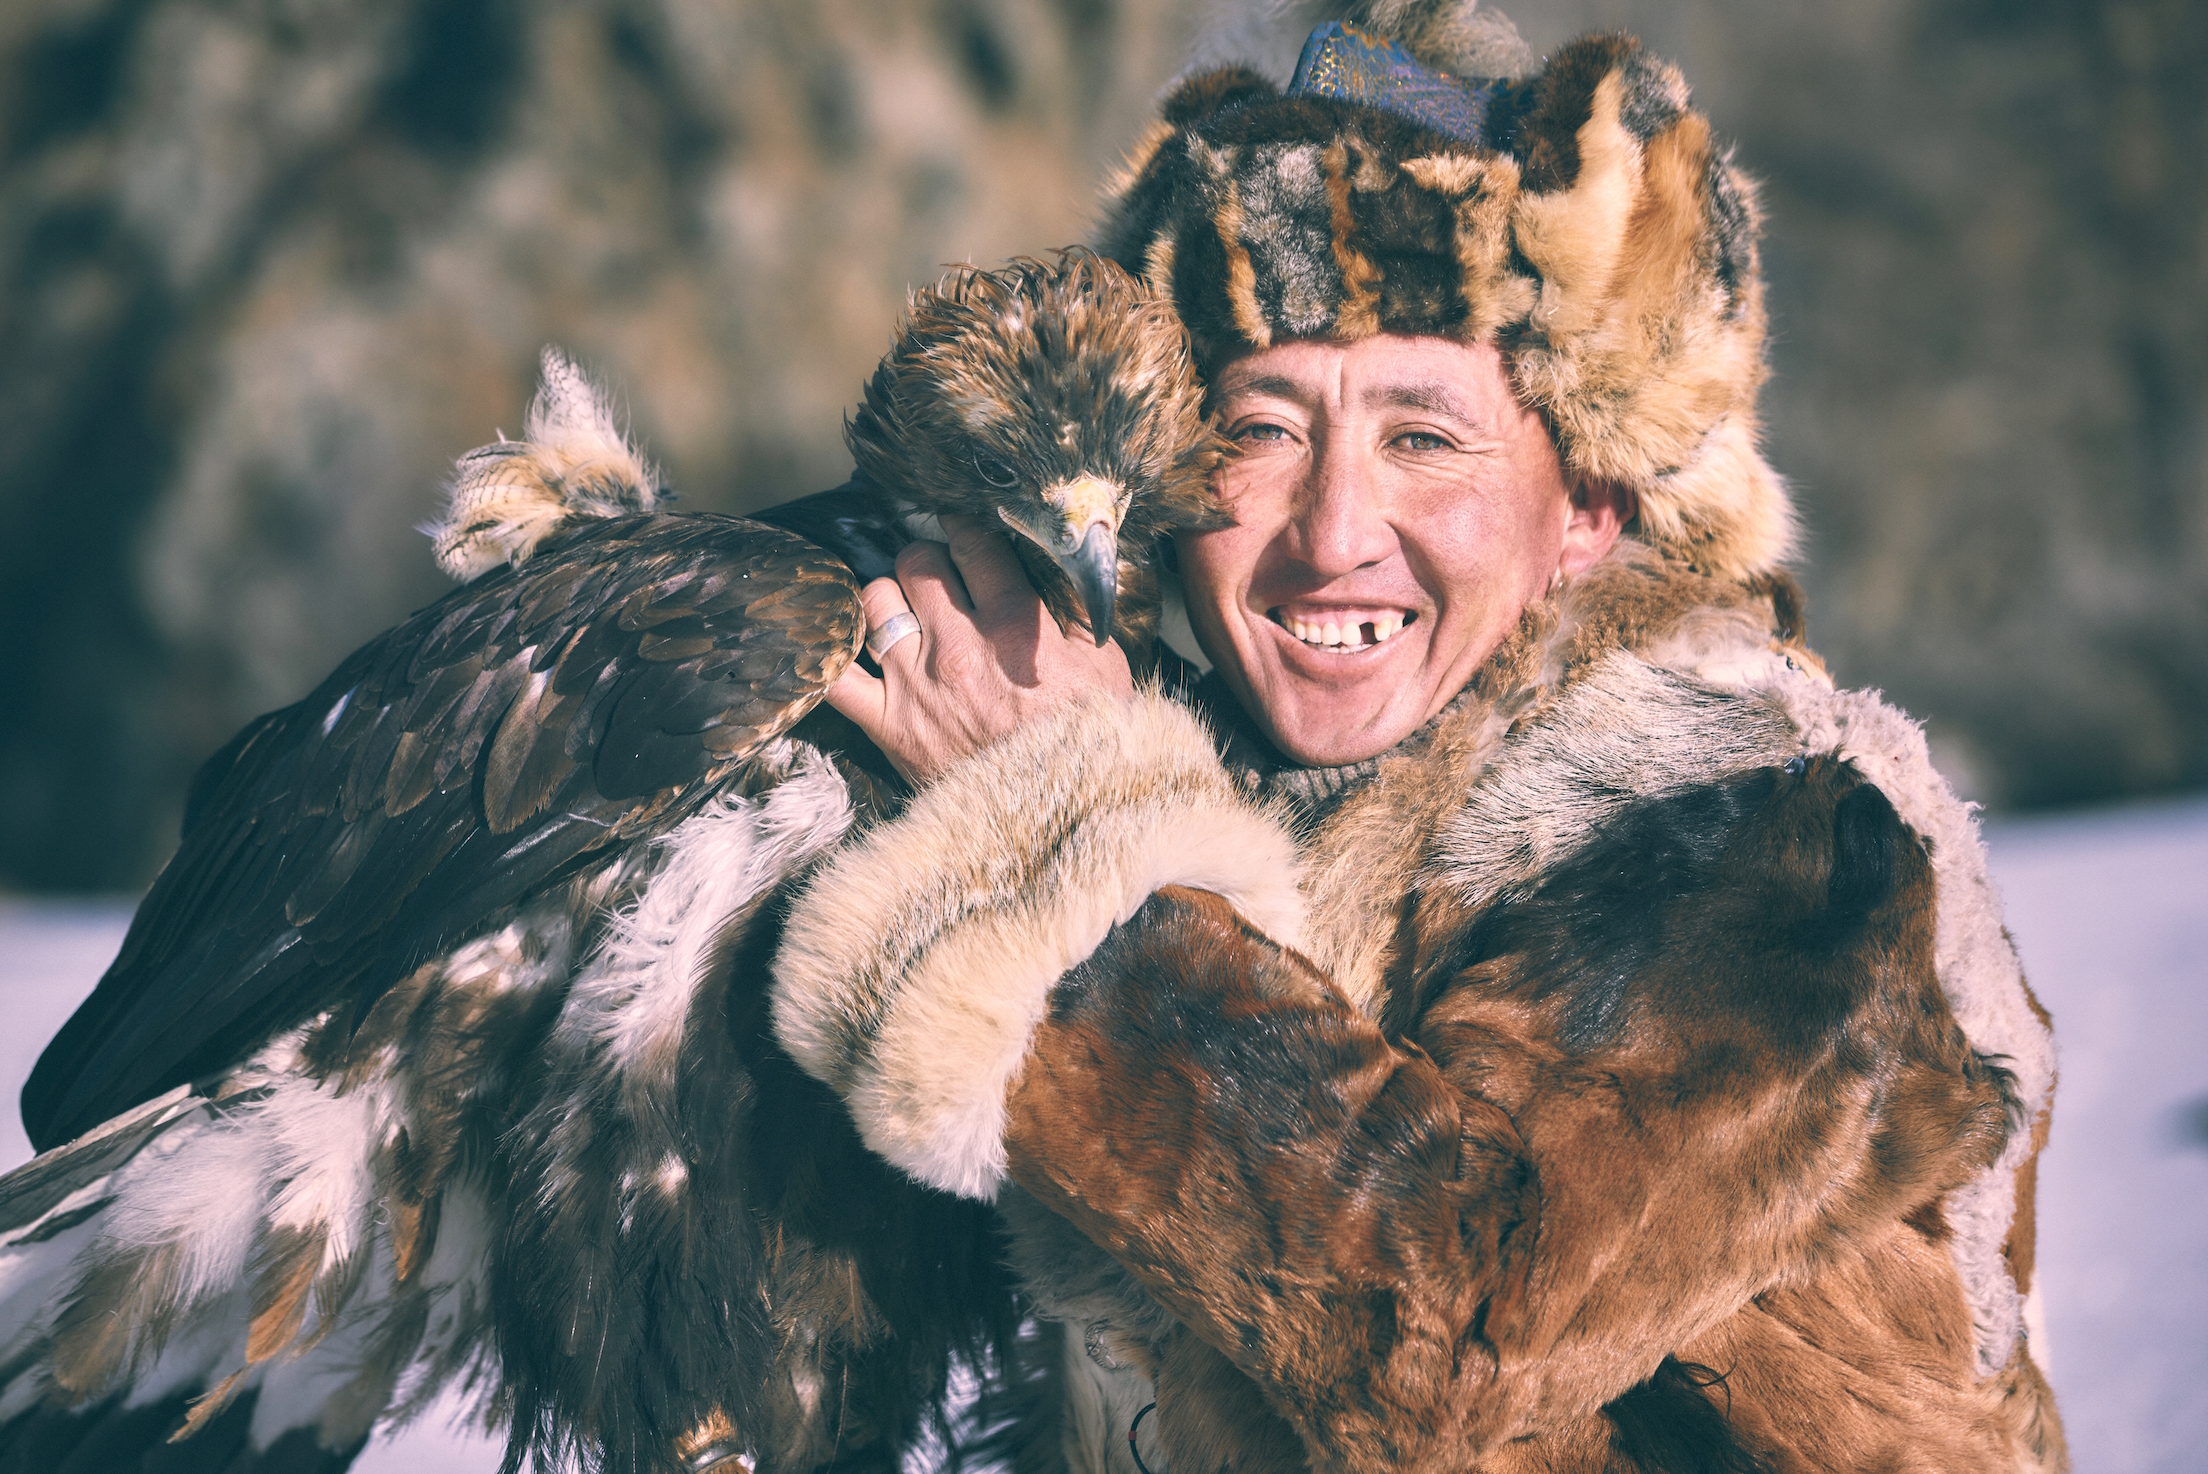 Khasar_S_BoteiAndHisEagleCuddleTime_Terelj_Mongolia_Winter_2015 2.jpg